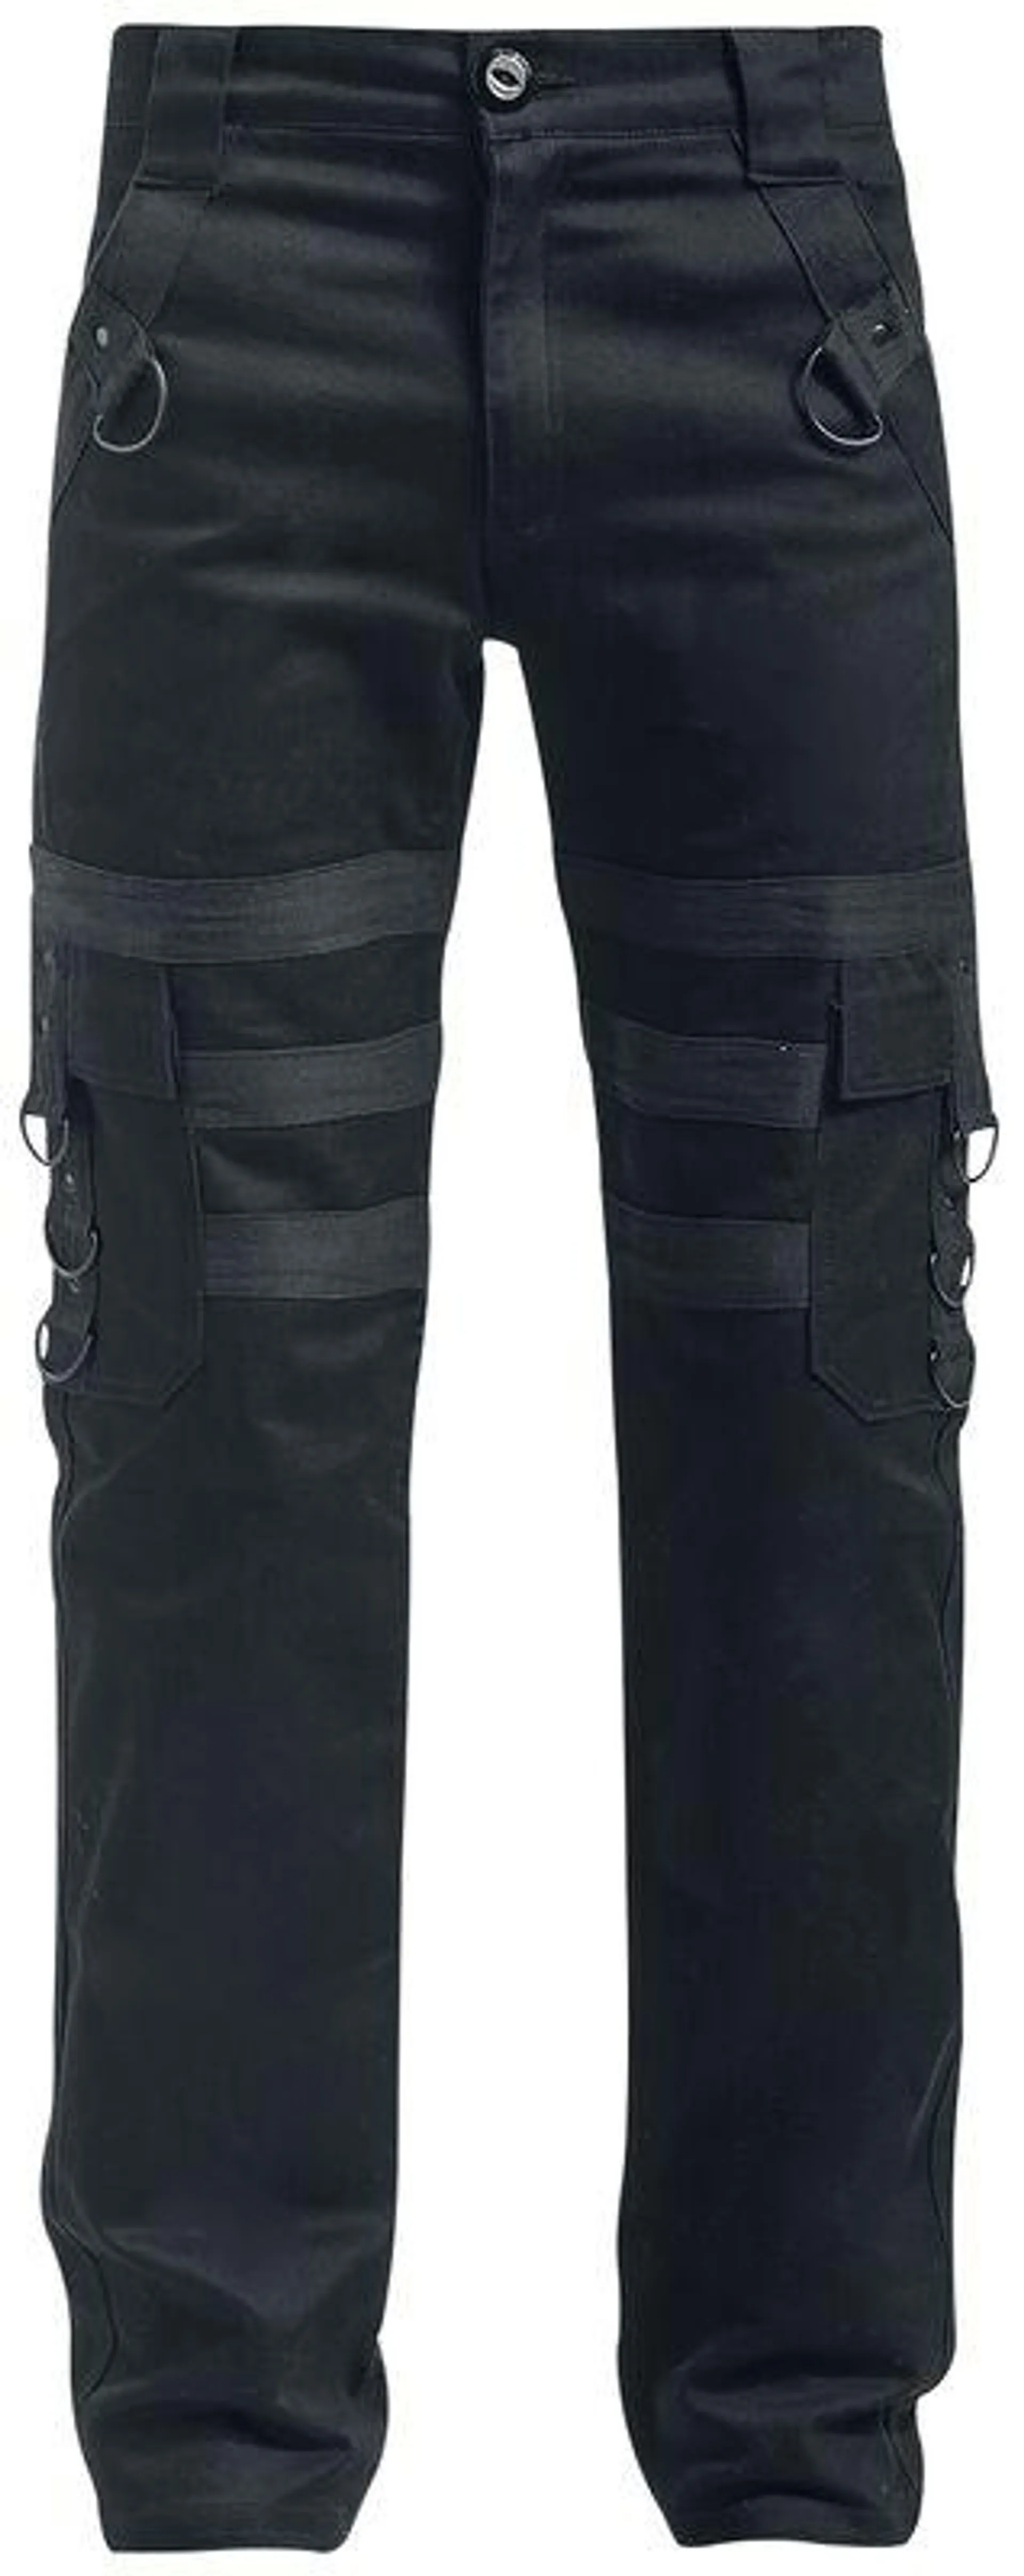 "Liam Pants" Pantalones de tela Negro de Vixxsin